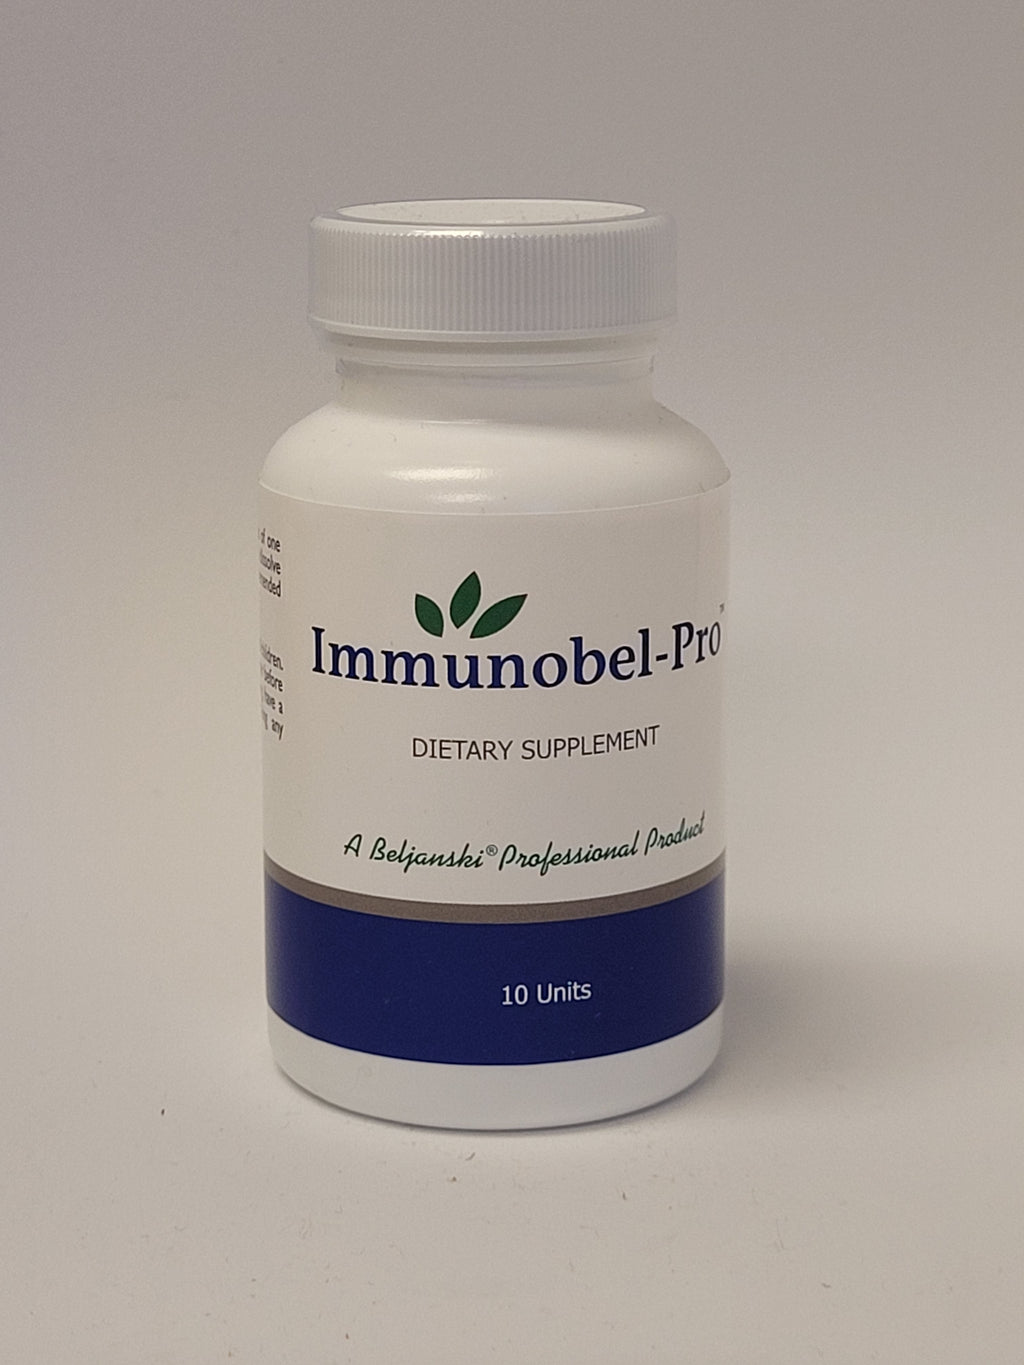 Immunobel Pro